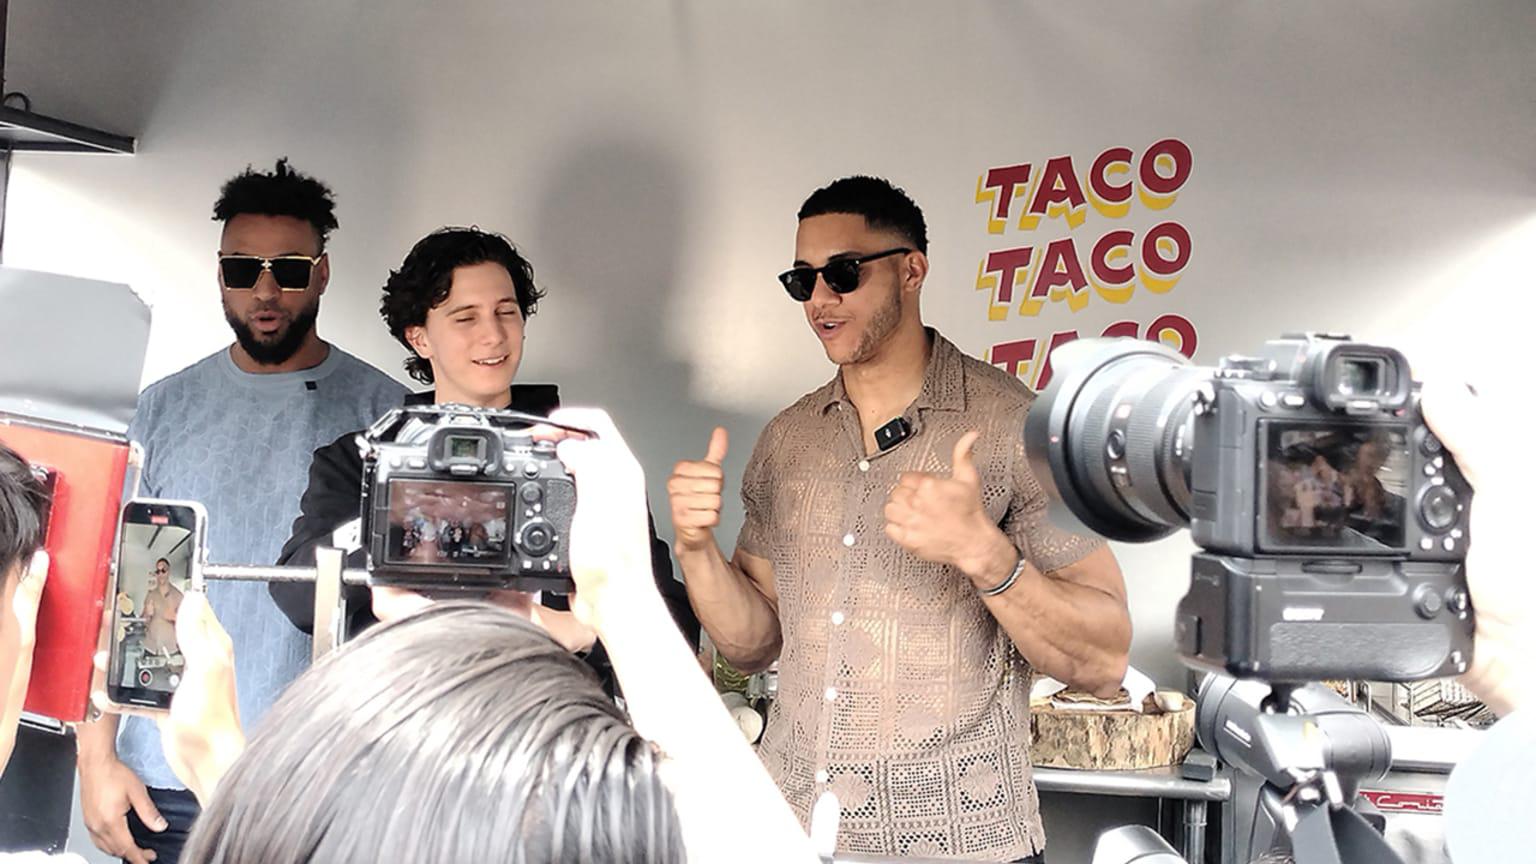 $!Díaz, Peña y Jones gozan en grande el Taco Tour en CDMX